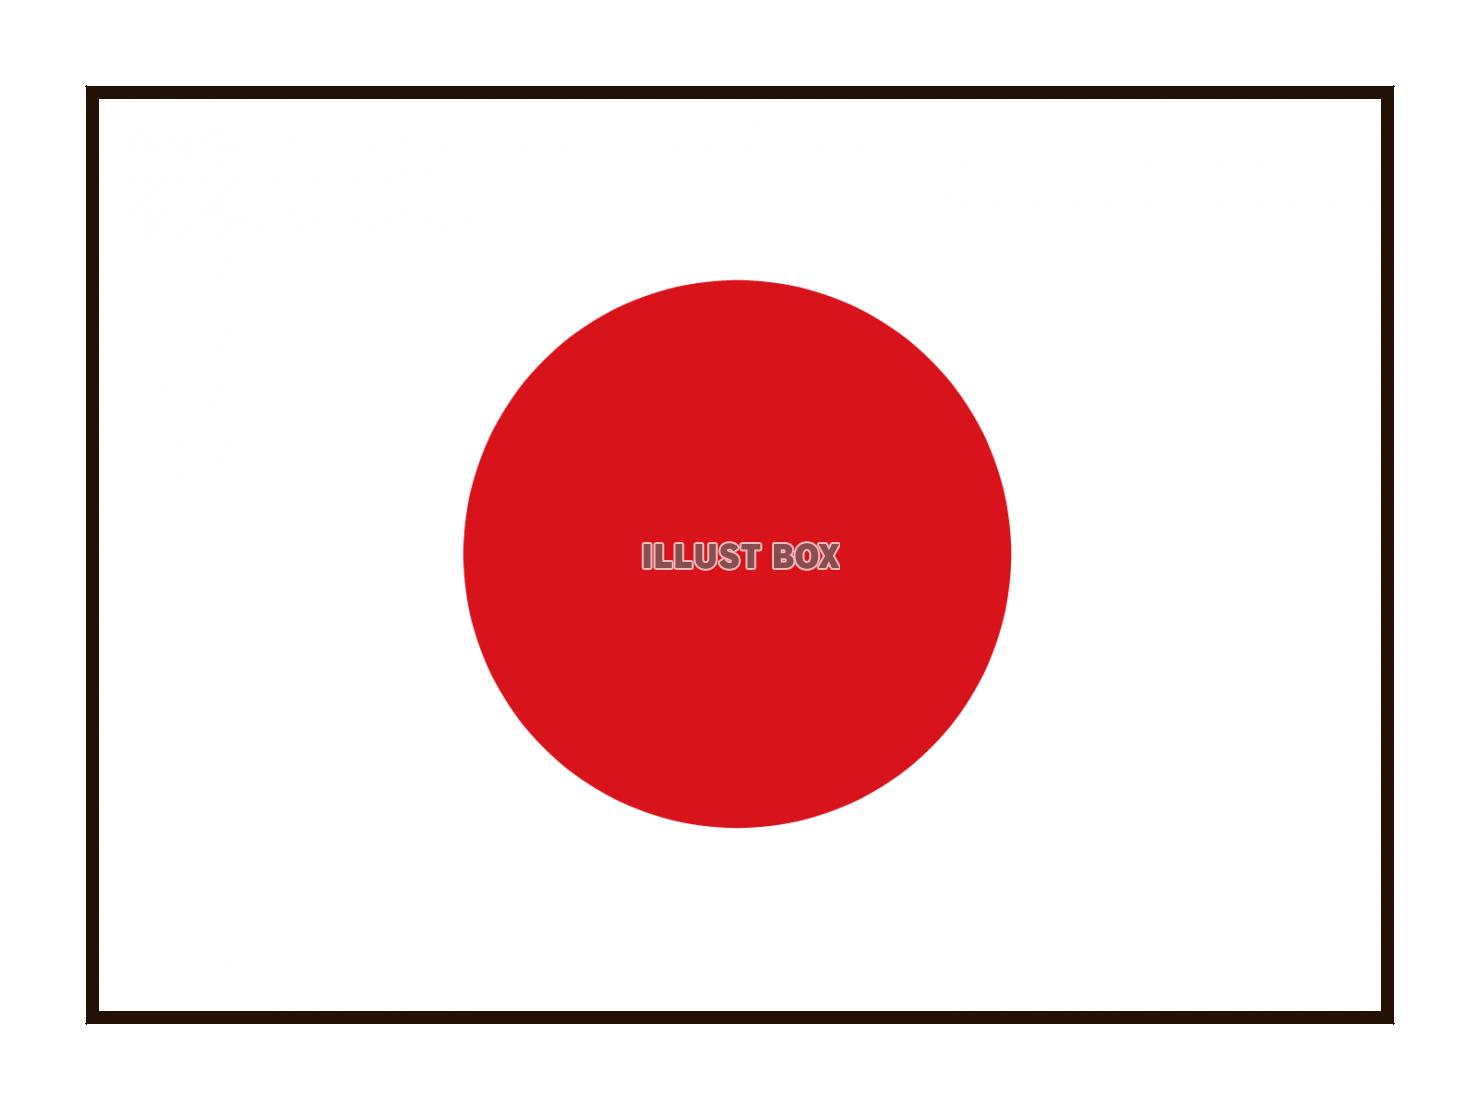 シンプルな日本国旗